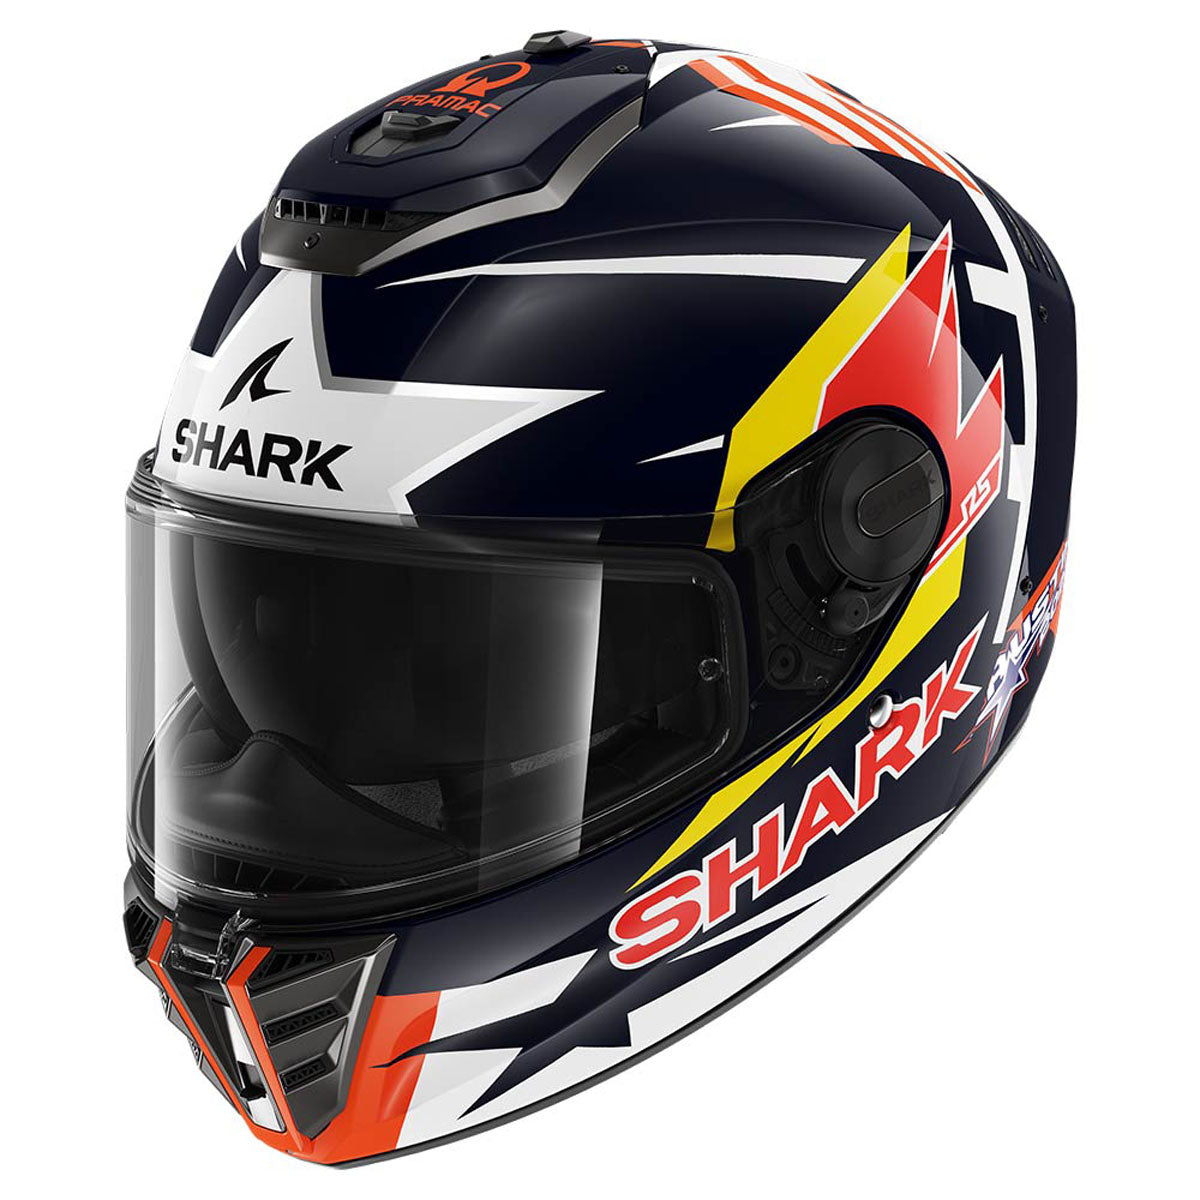 Shark Spartan RS Replica Zarco Austin Helmet - ExtremeSupply.com